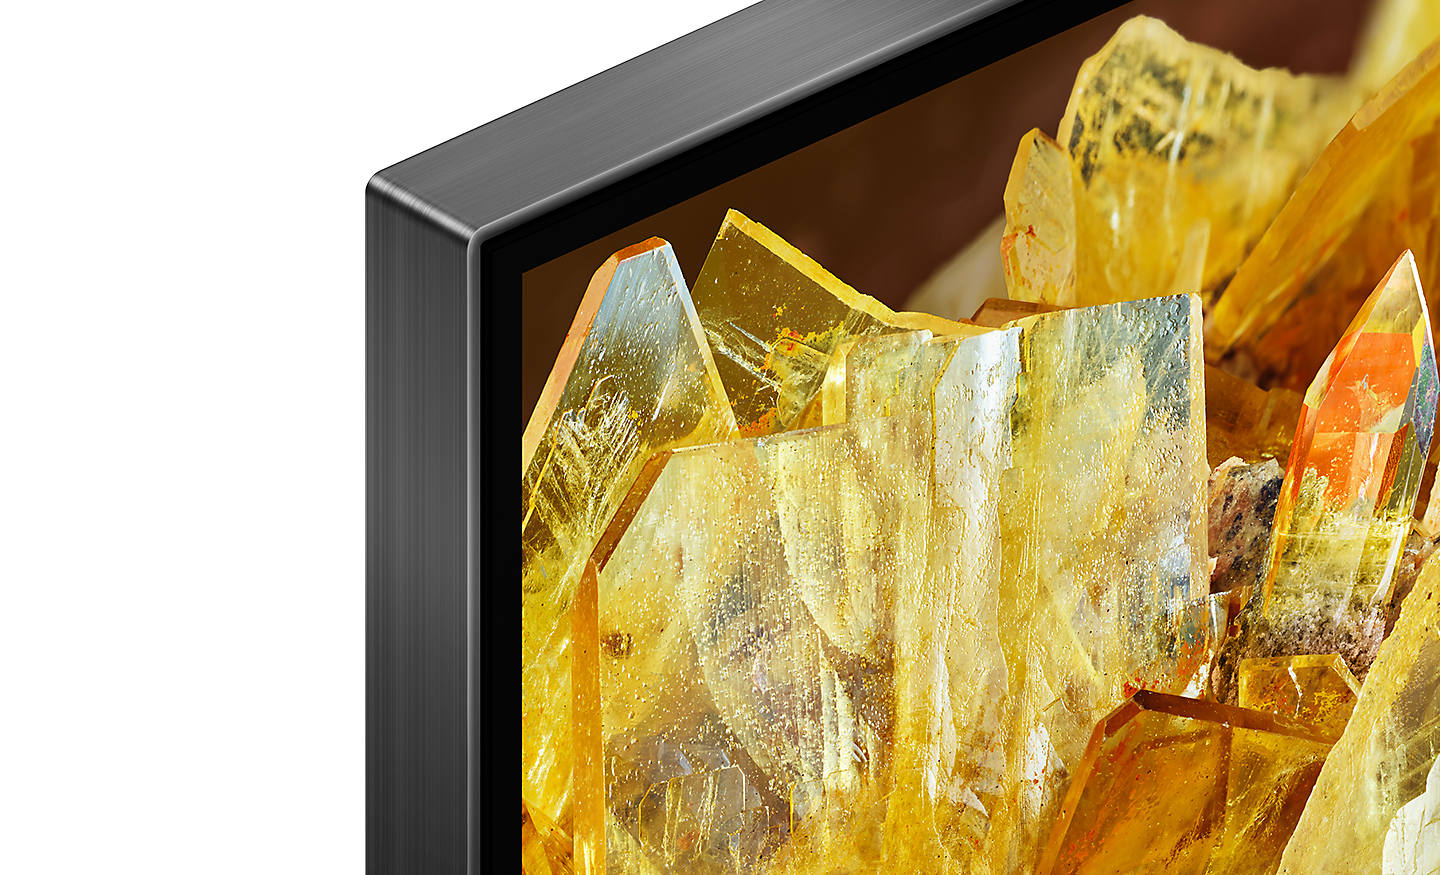 Hjørne af TV, der viser guldkrystaller på skærmen